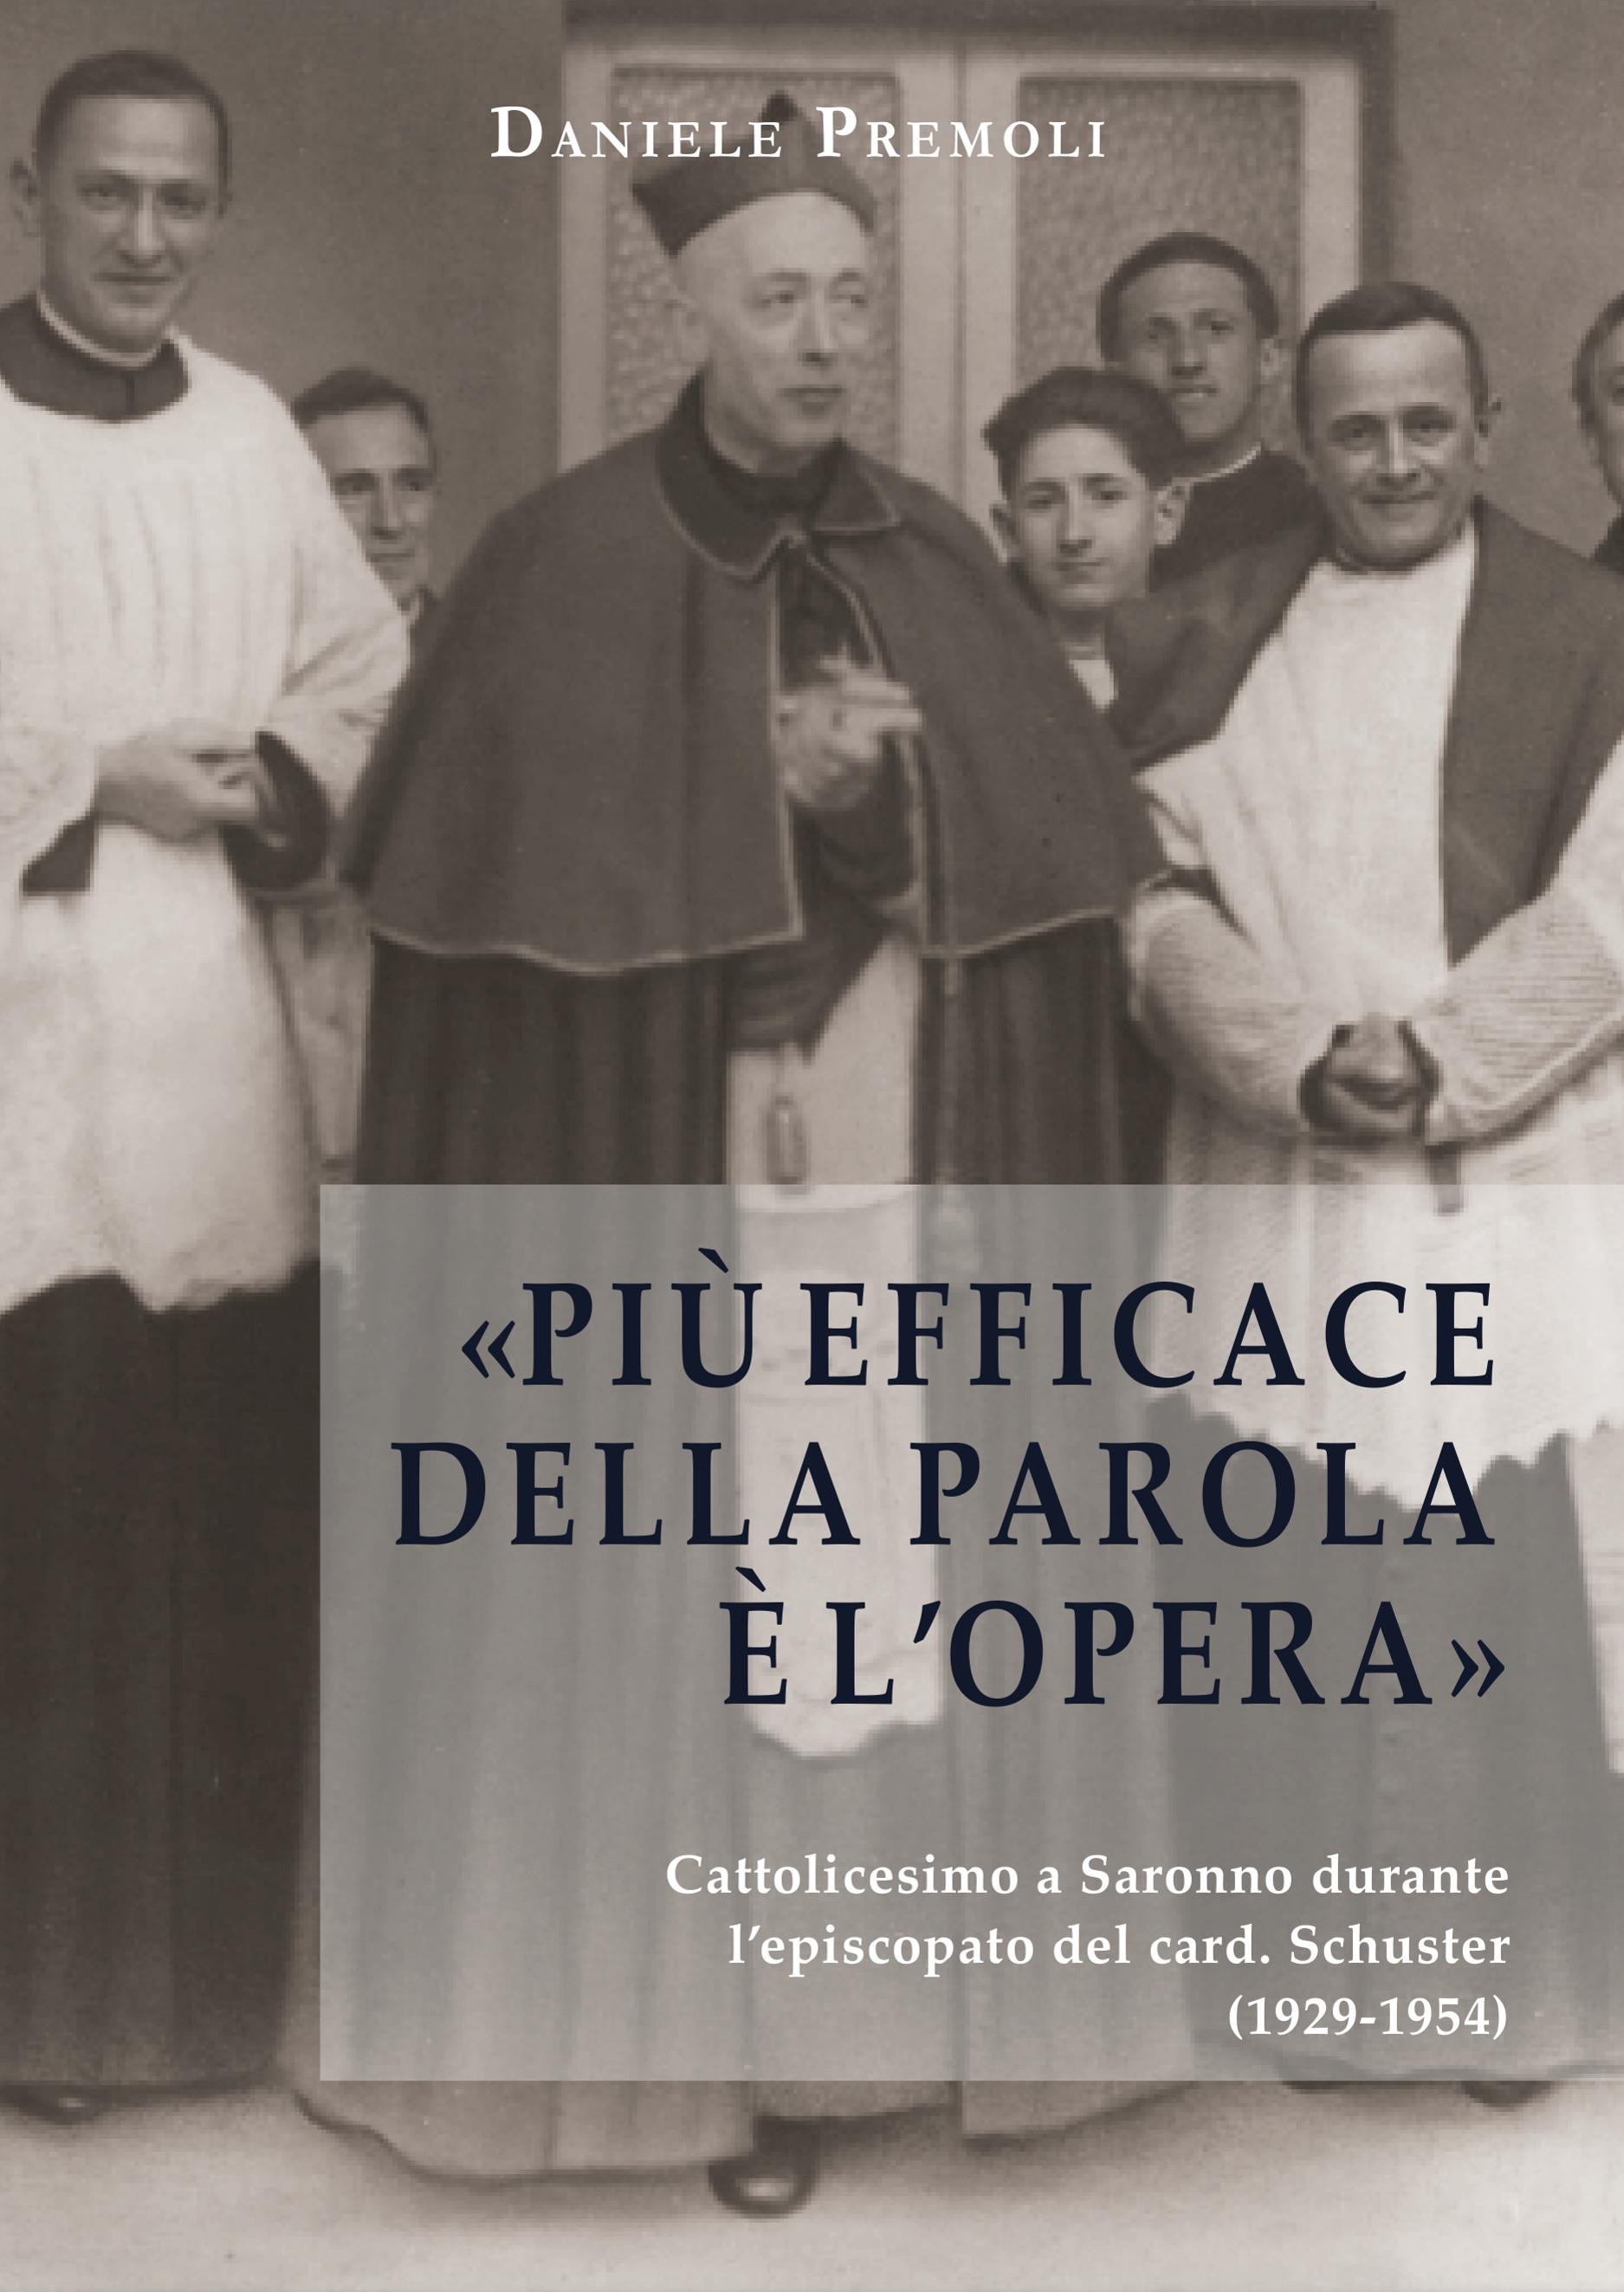 «Più efficace della parola è l'opera». Cattolicesimo a Saronno durante l’episcopato del card. Schuster (1929-1954)